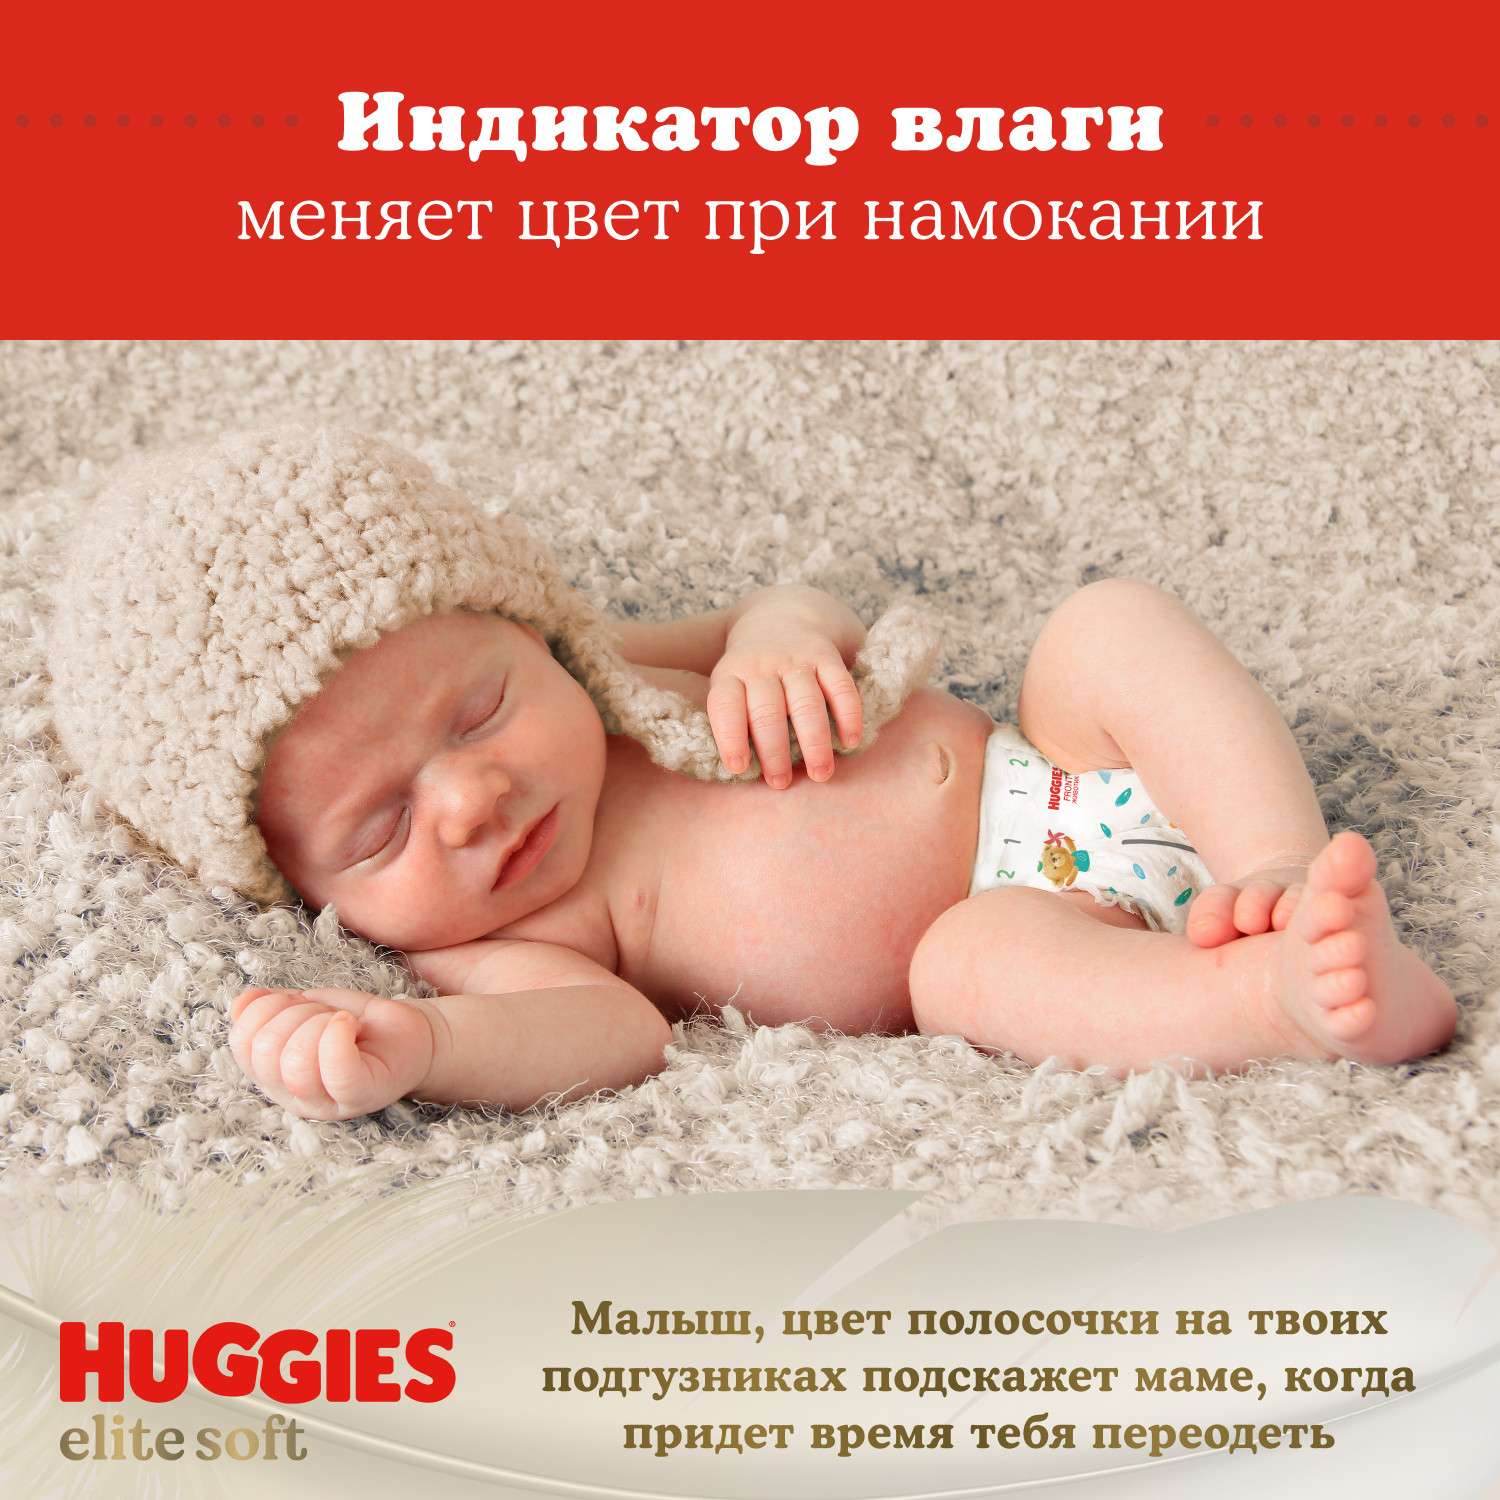 Подгузники Huggies Elite Soft для новорожденных 0 до 3.5кг 50шт - фото 13